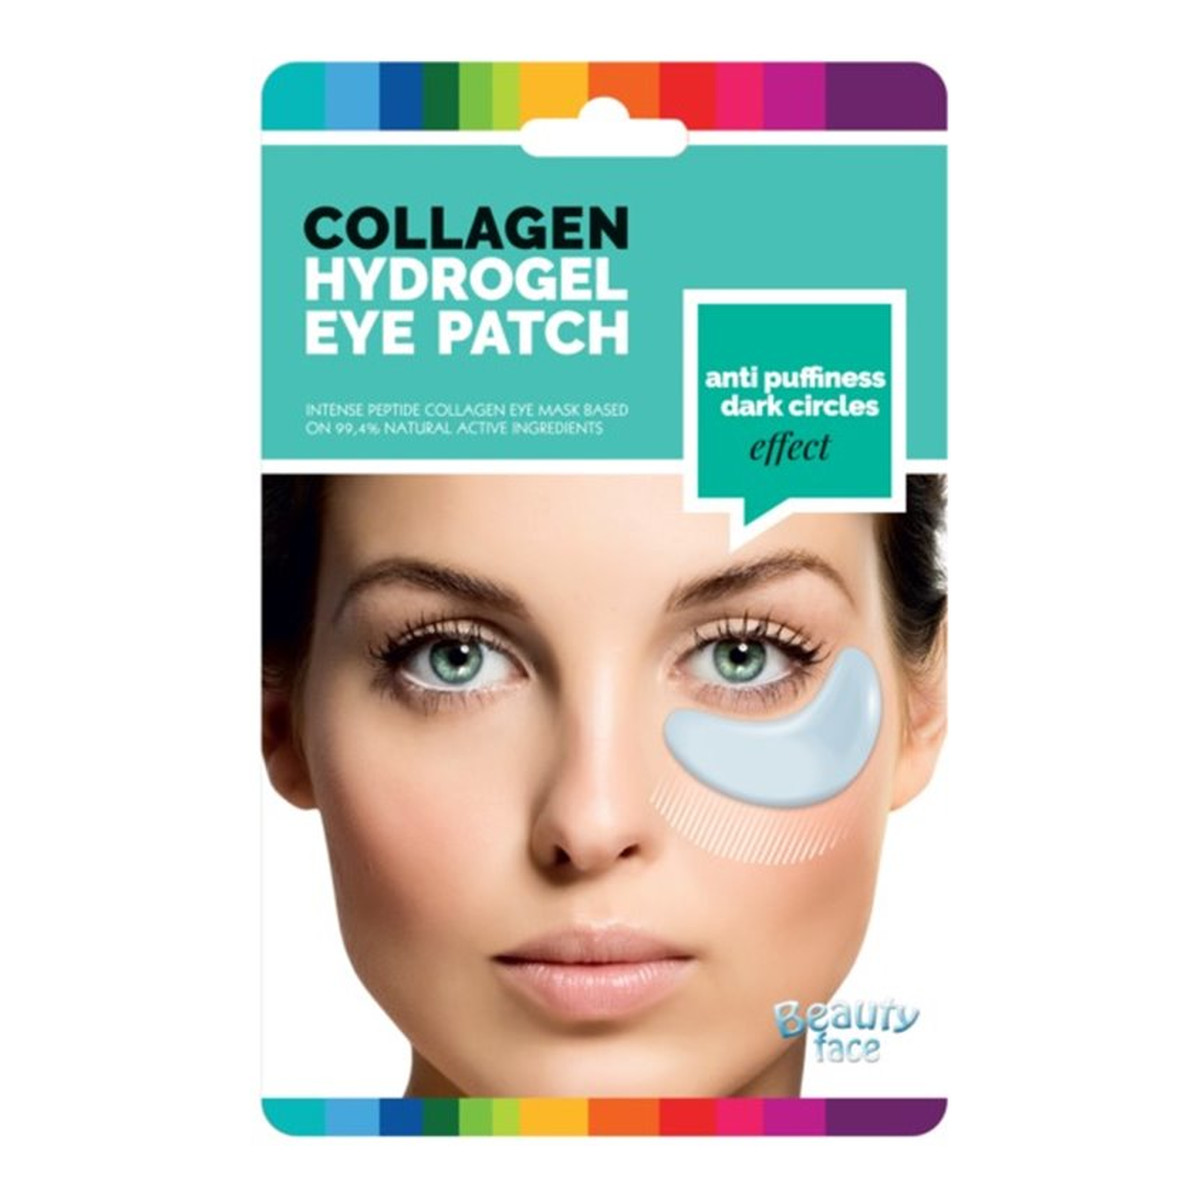 Beauty Face Collagen Hydrogel Eye Patch wygładzające płatki hydrożelowe pod oczy przeciw cieniom i opuchliźnie